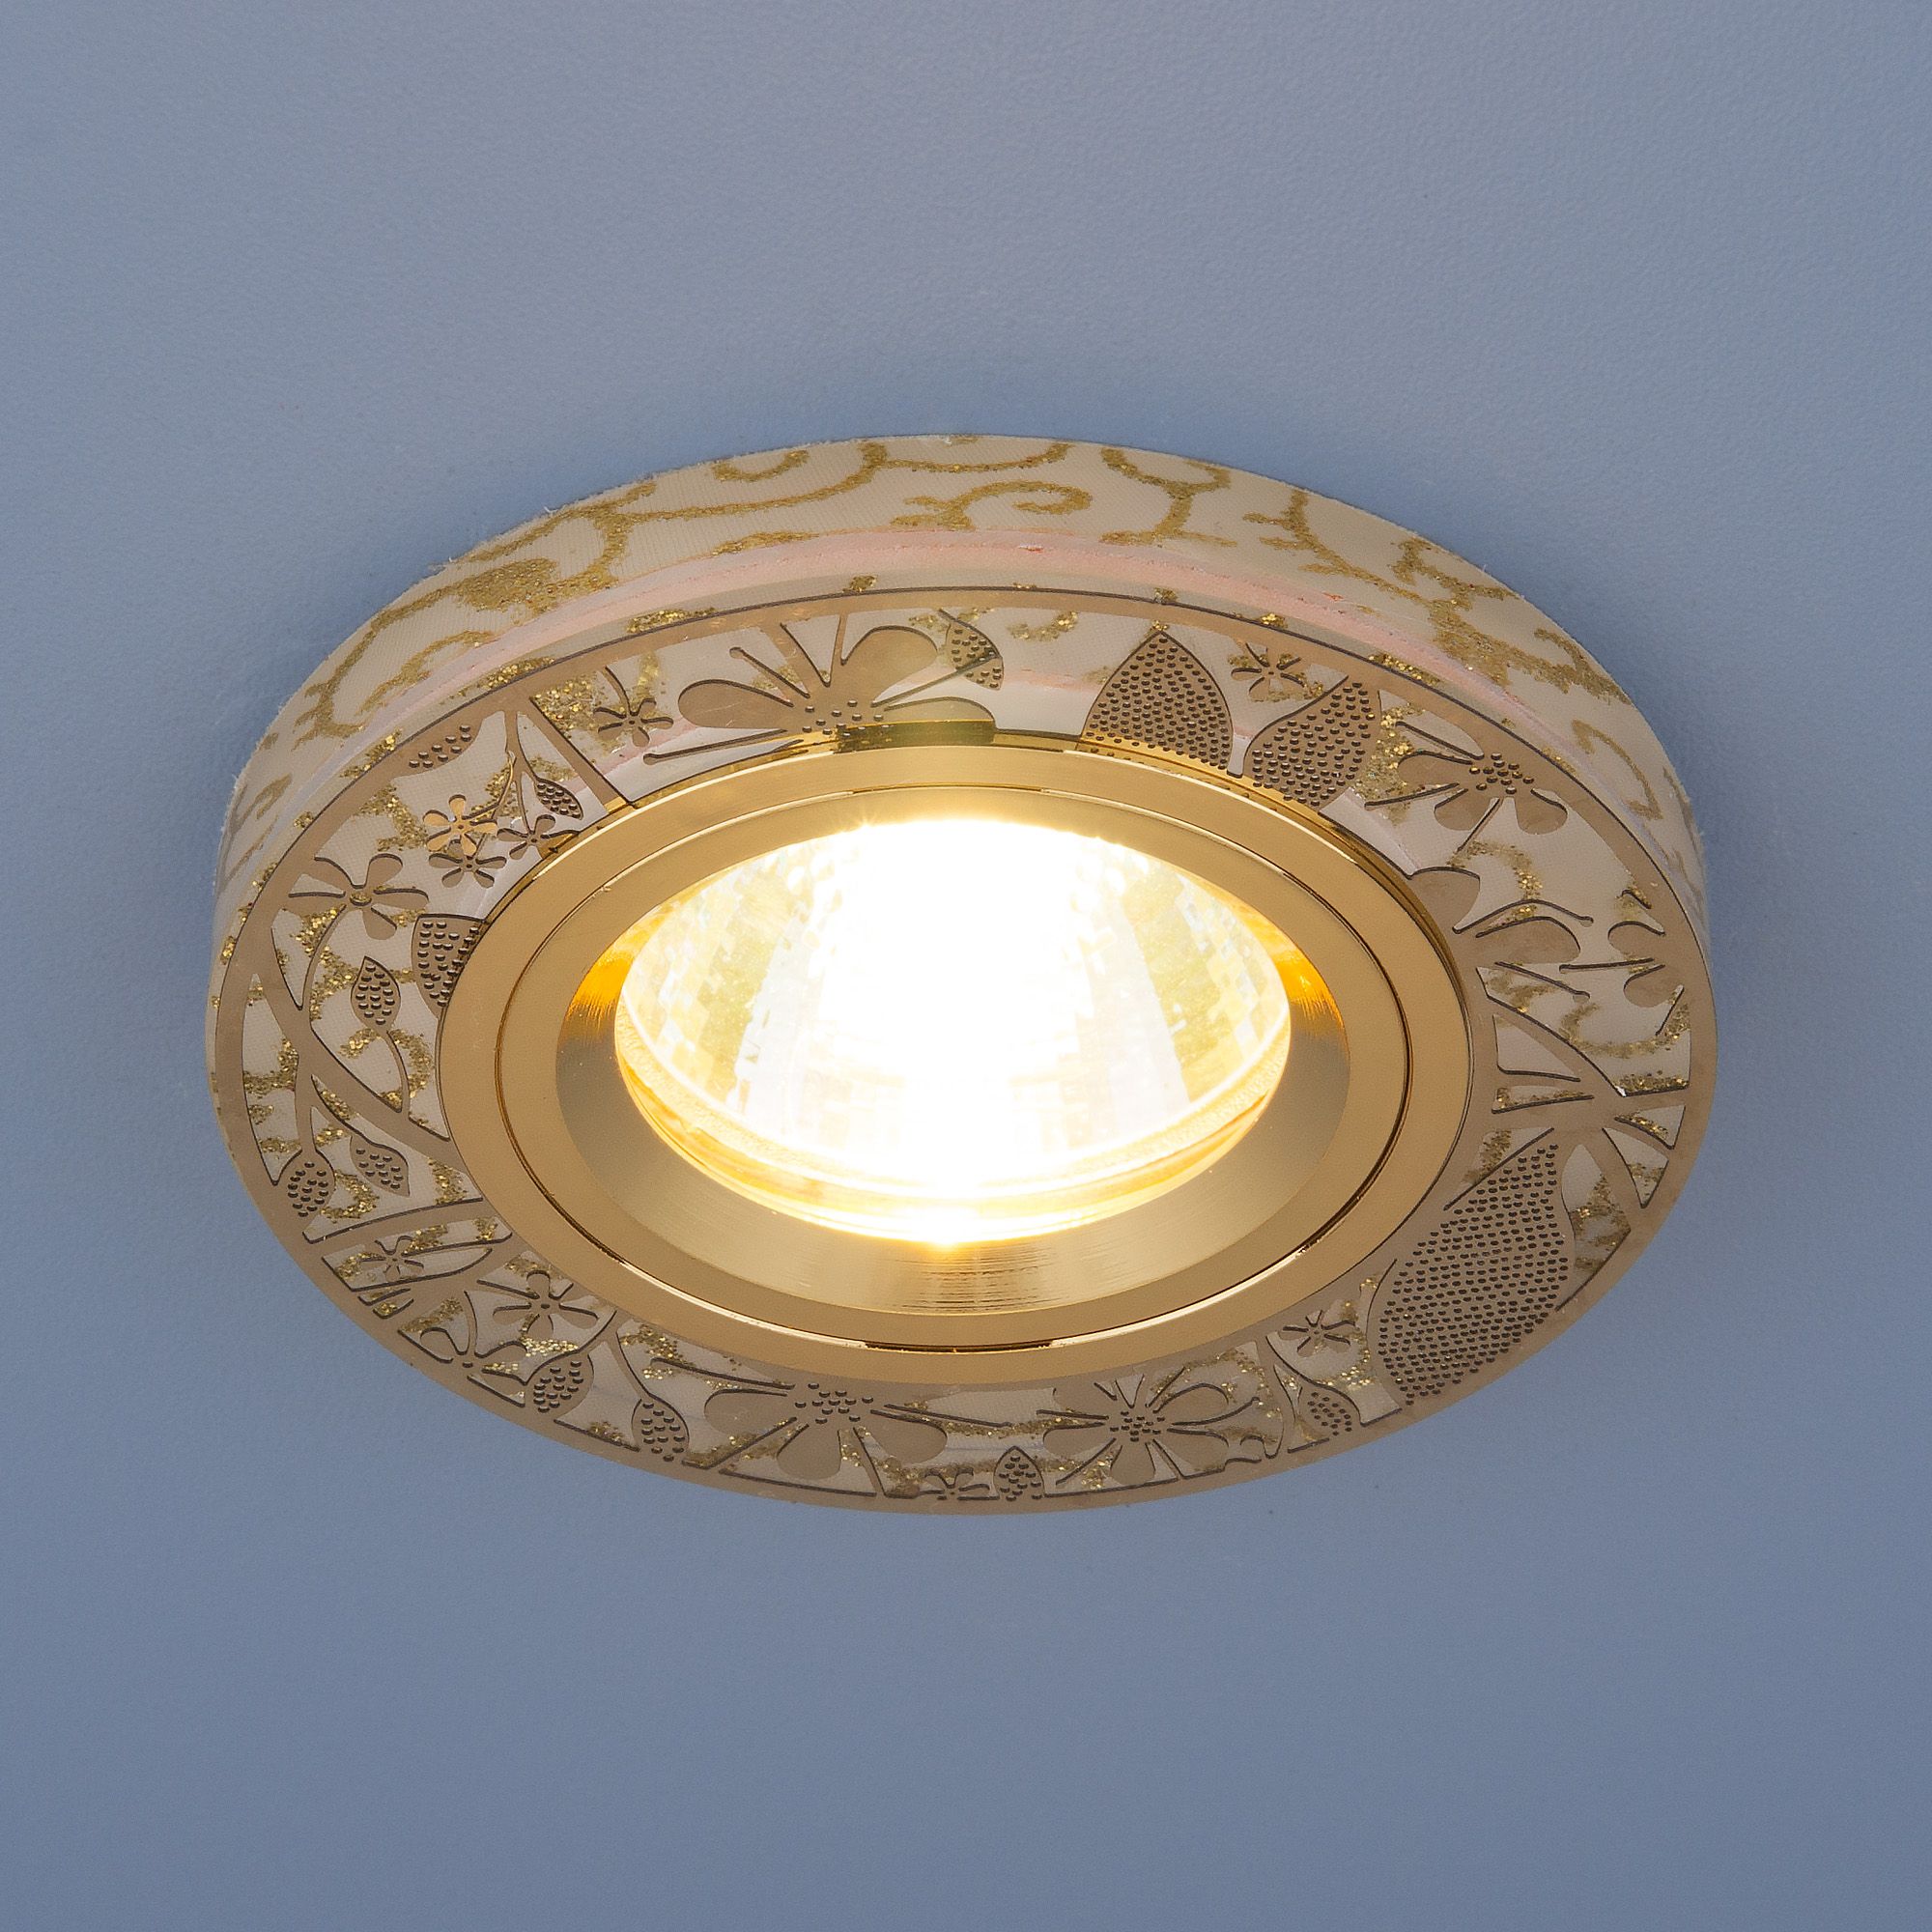 Встраиваемый точечный светильник с LED подсветкой 8096 MR16 GD золото